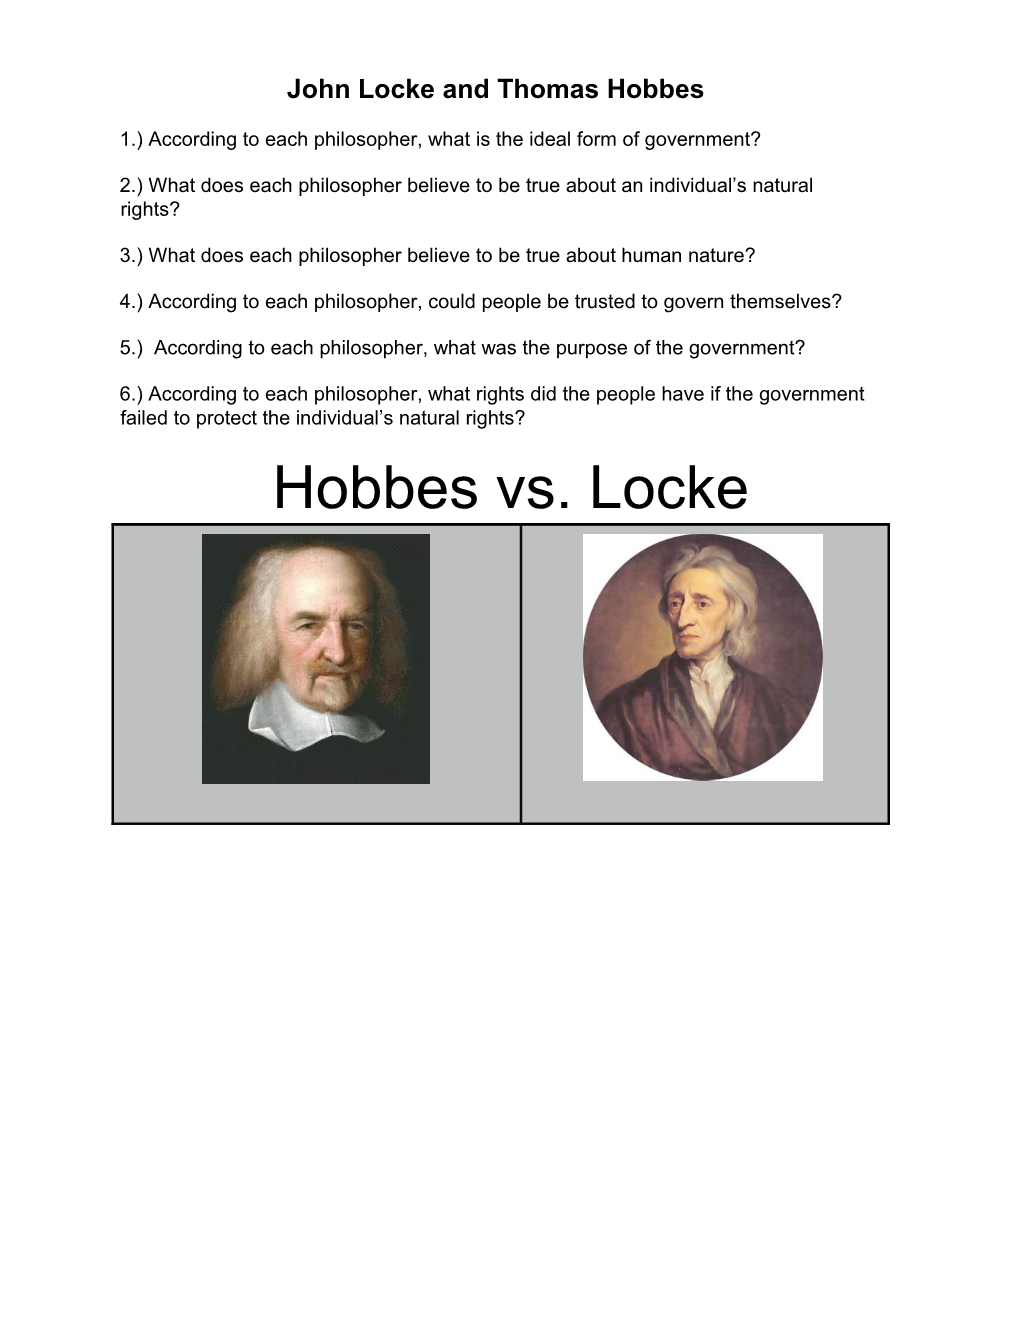 Hobbes Vs. Locke T-Chart